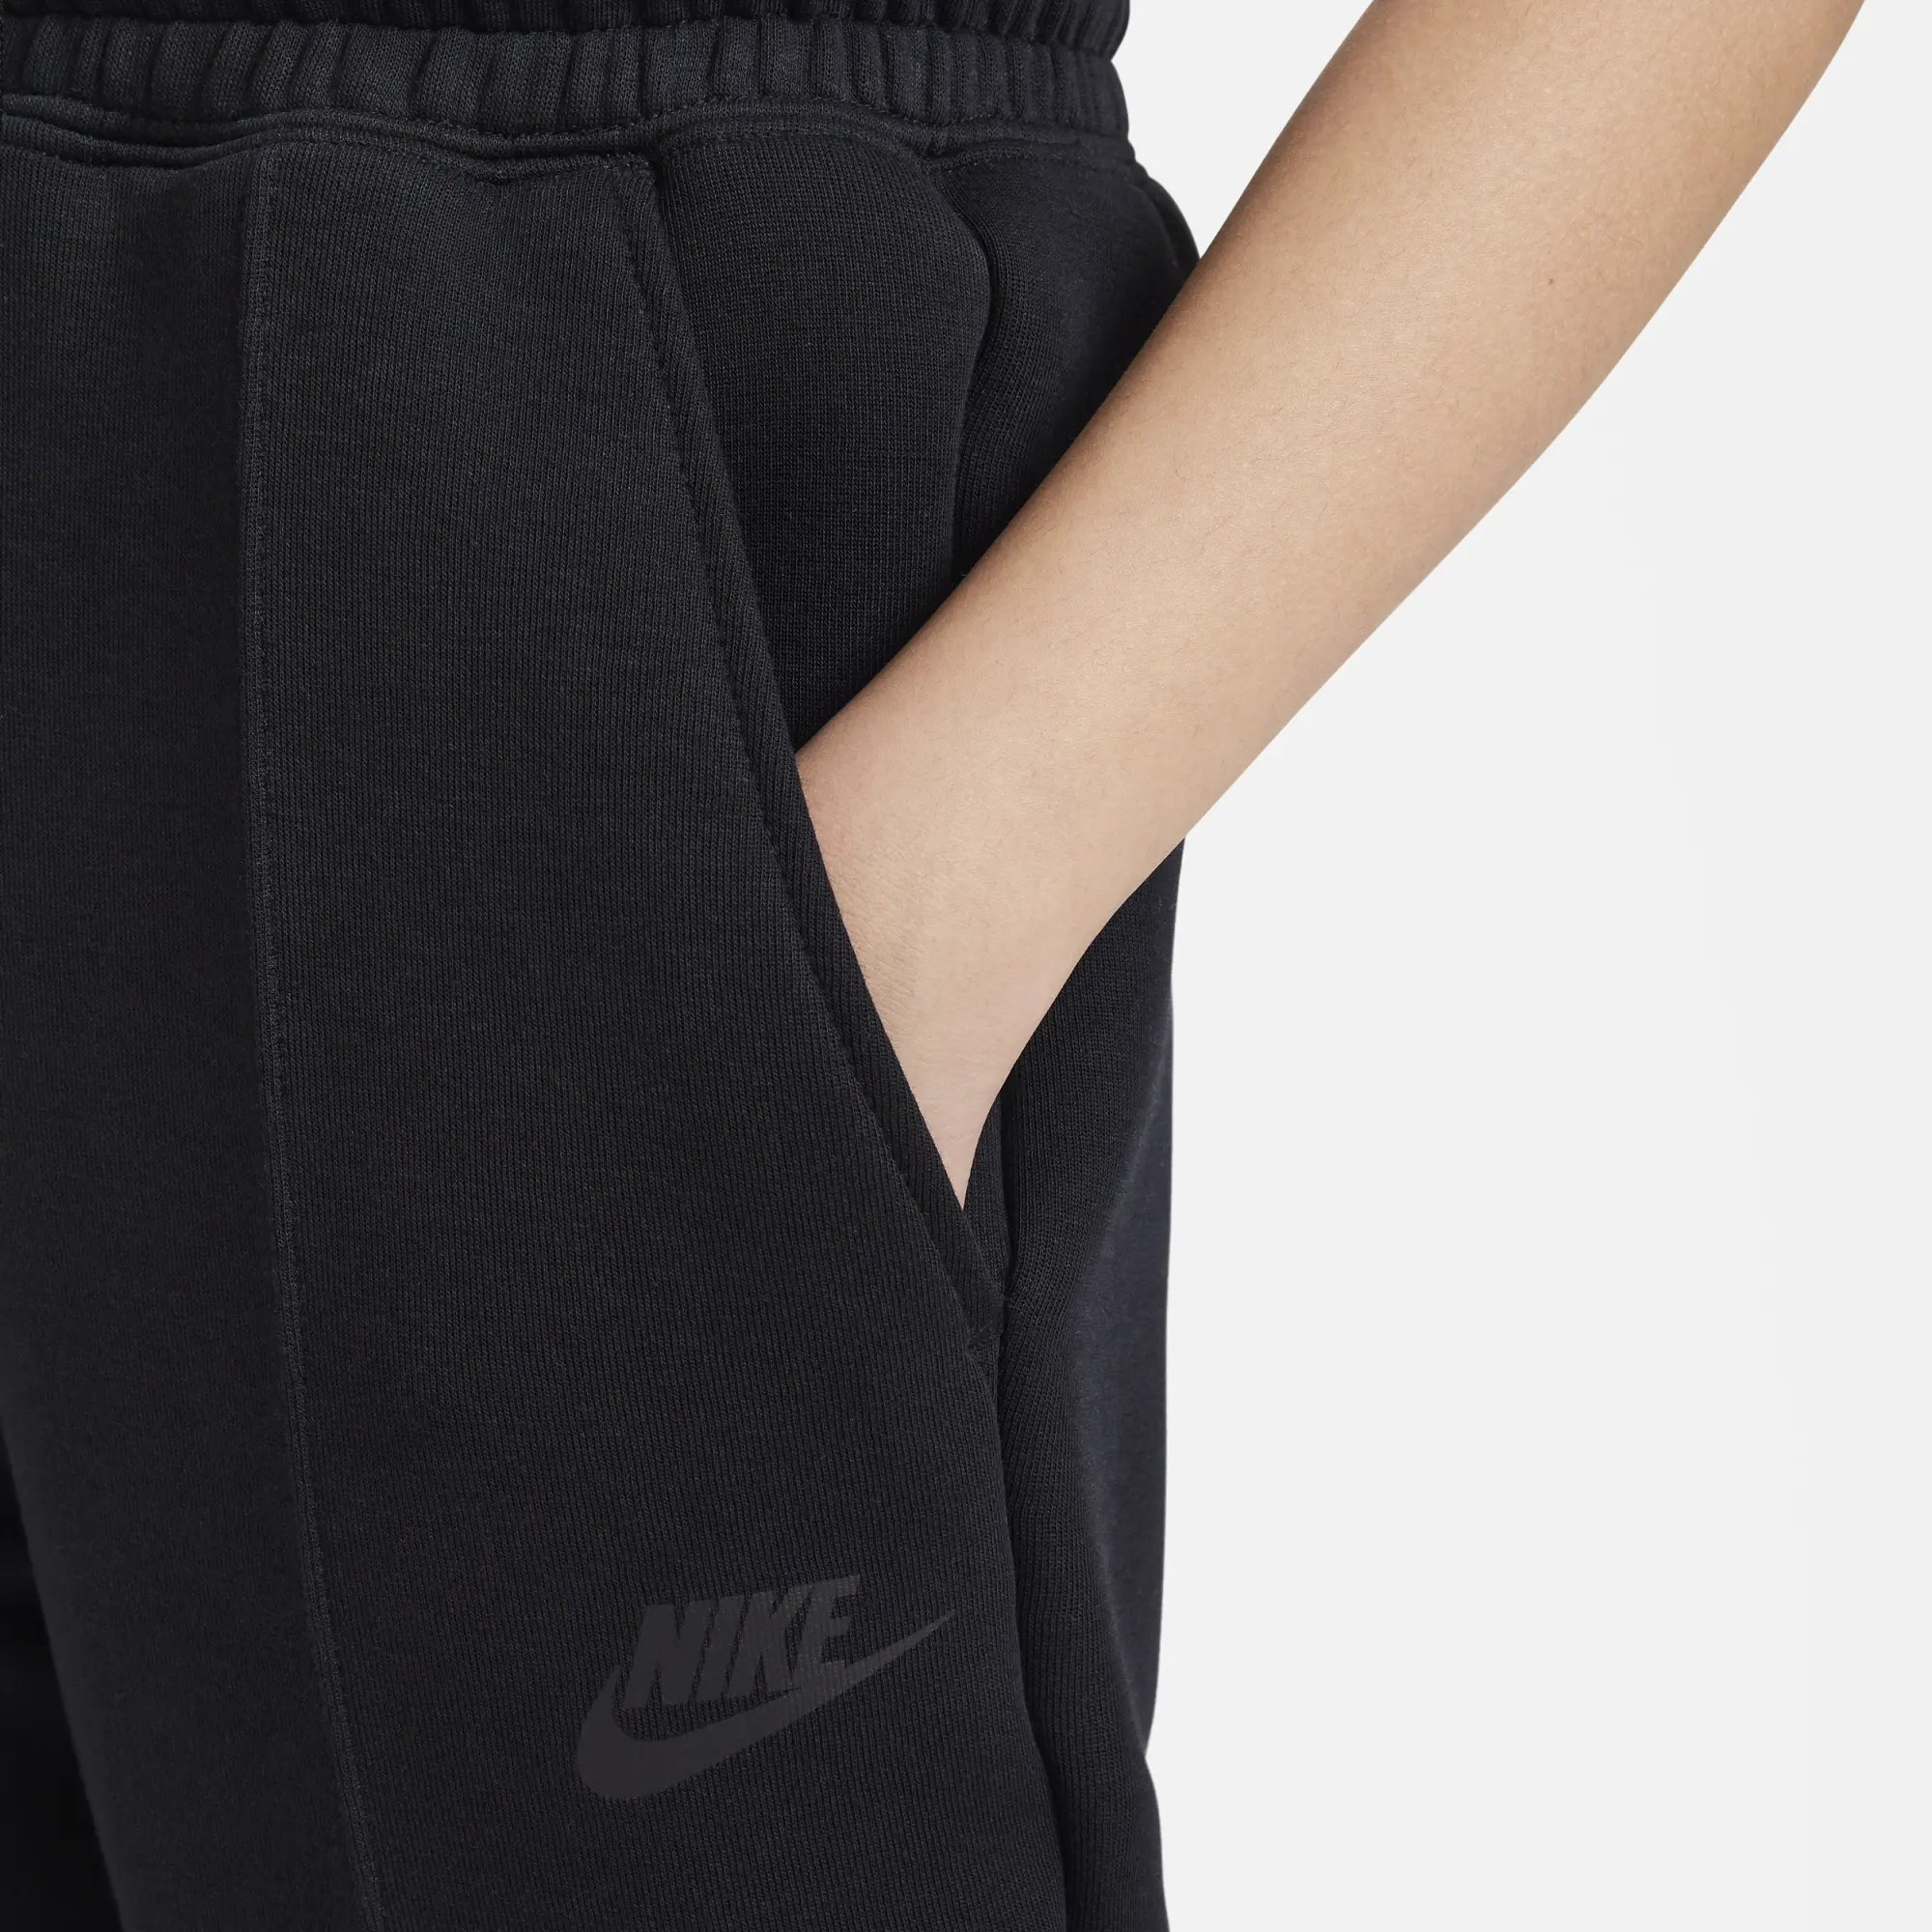 Nike Sportswear Tech Fleece Older Kids' (Girls') Joggers - Black ...